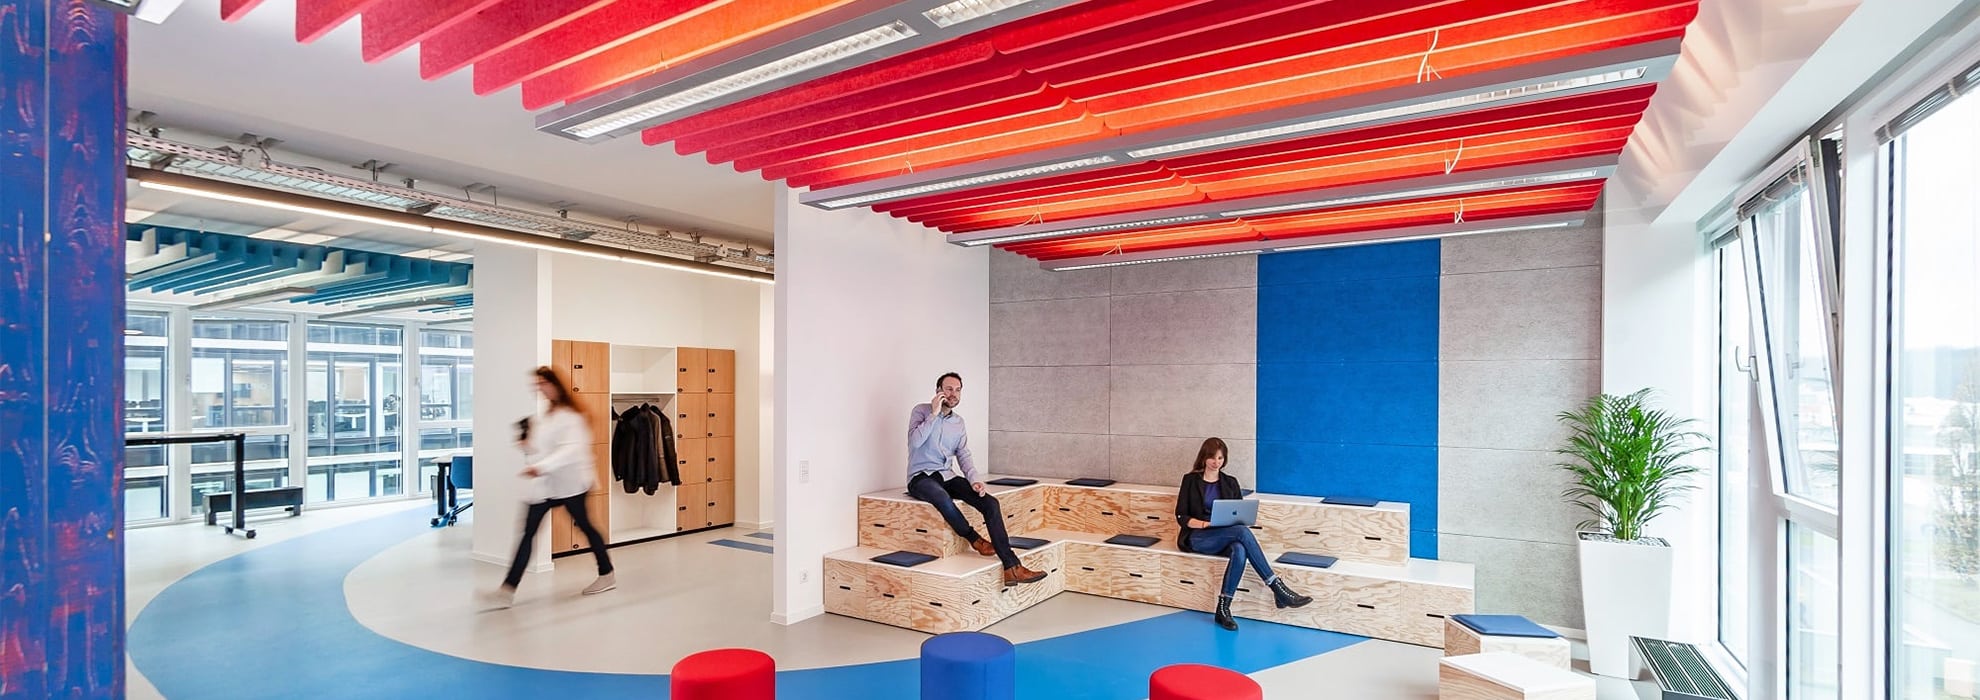 Menschen bewegen sich in einer offenen und modernene Bürolandschaft